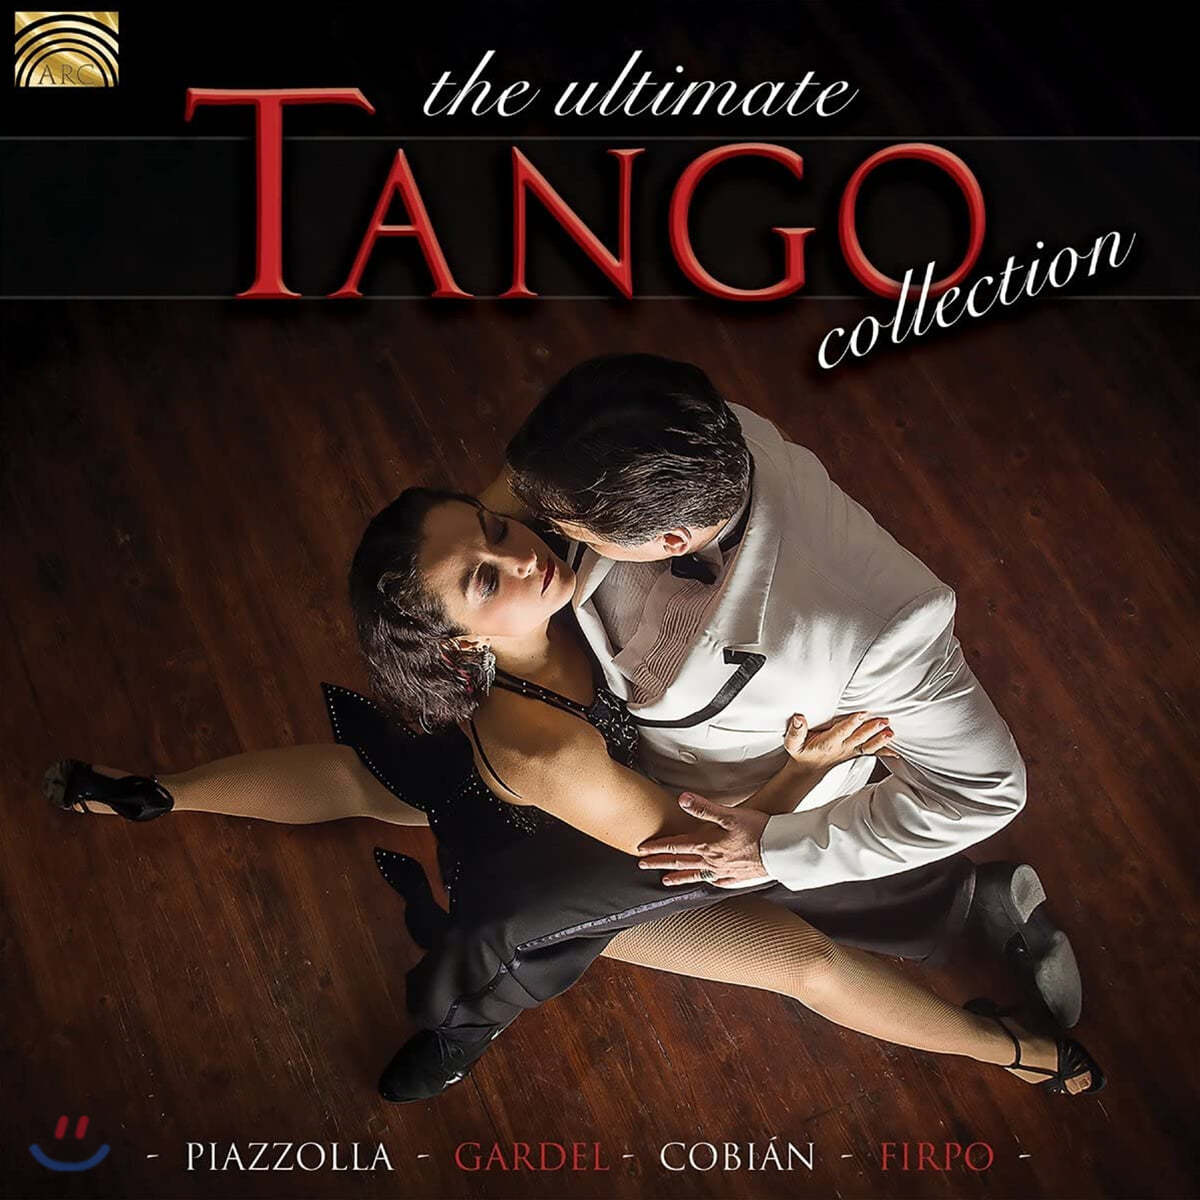 탱고 음악 모음집 (The Ultimate Tango Collection)